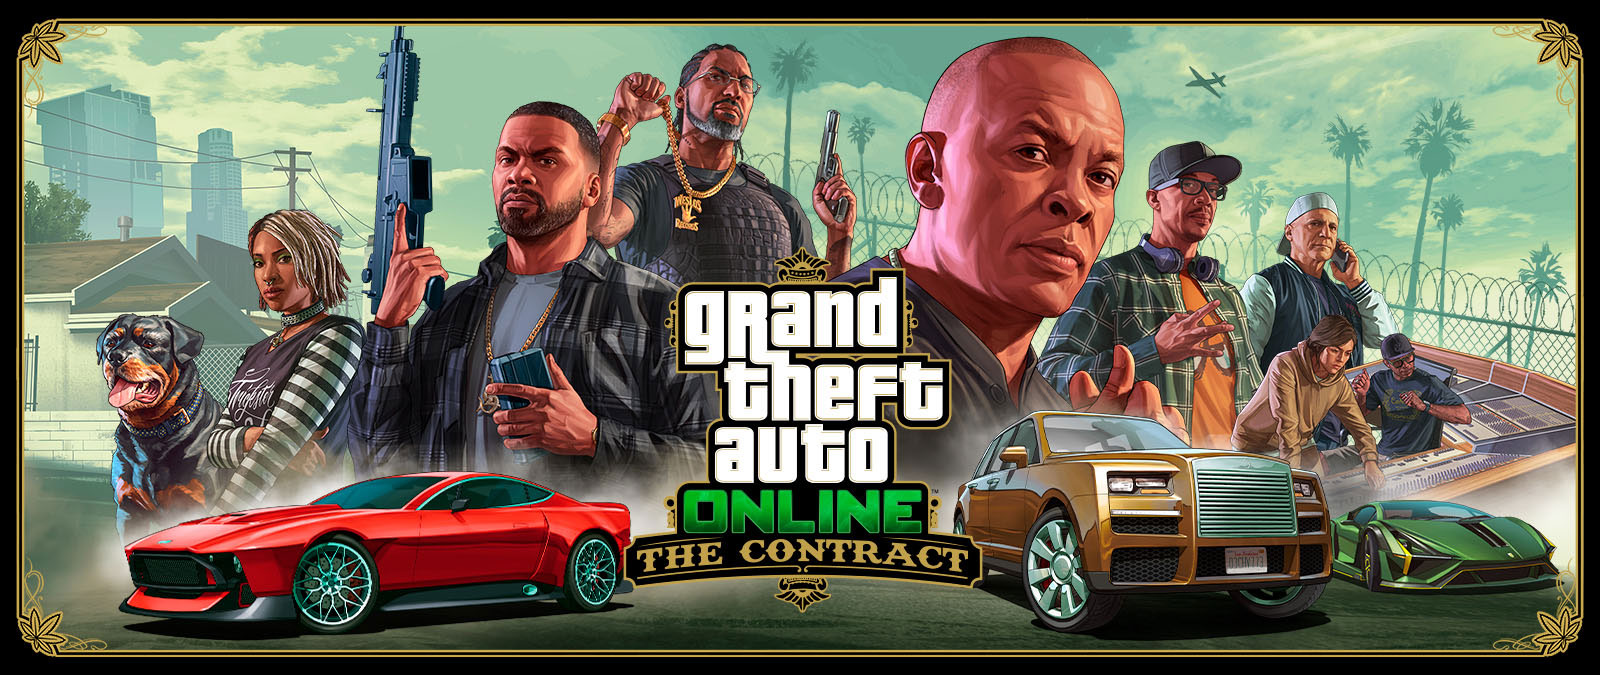 Grand Theft Auto Online, Le Contrat, Franklin, sept autres amis et le chien Chop sont alignés derrière trois voitures de luxe. 